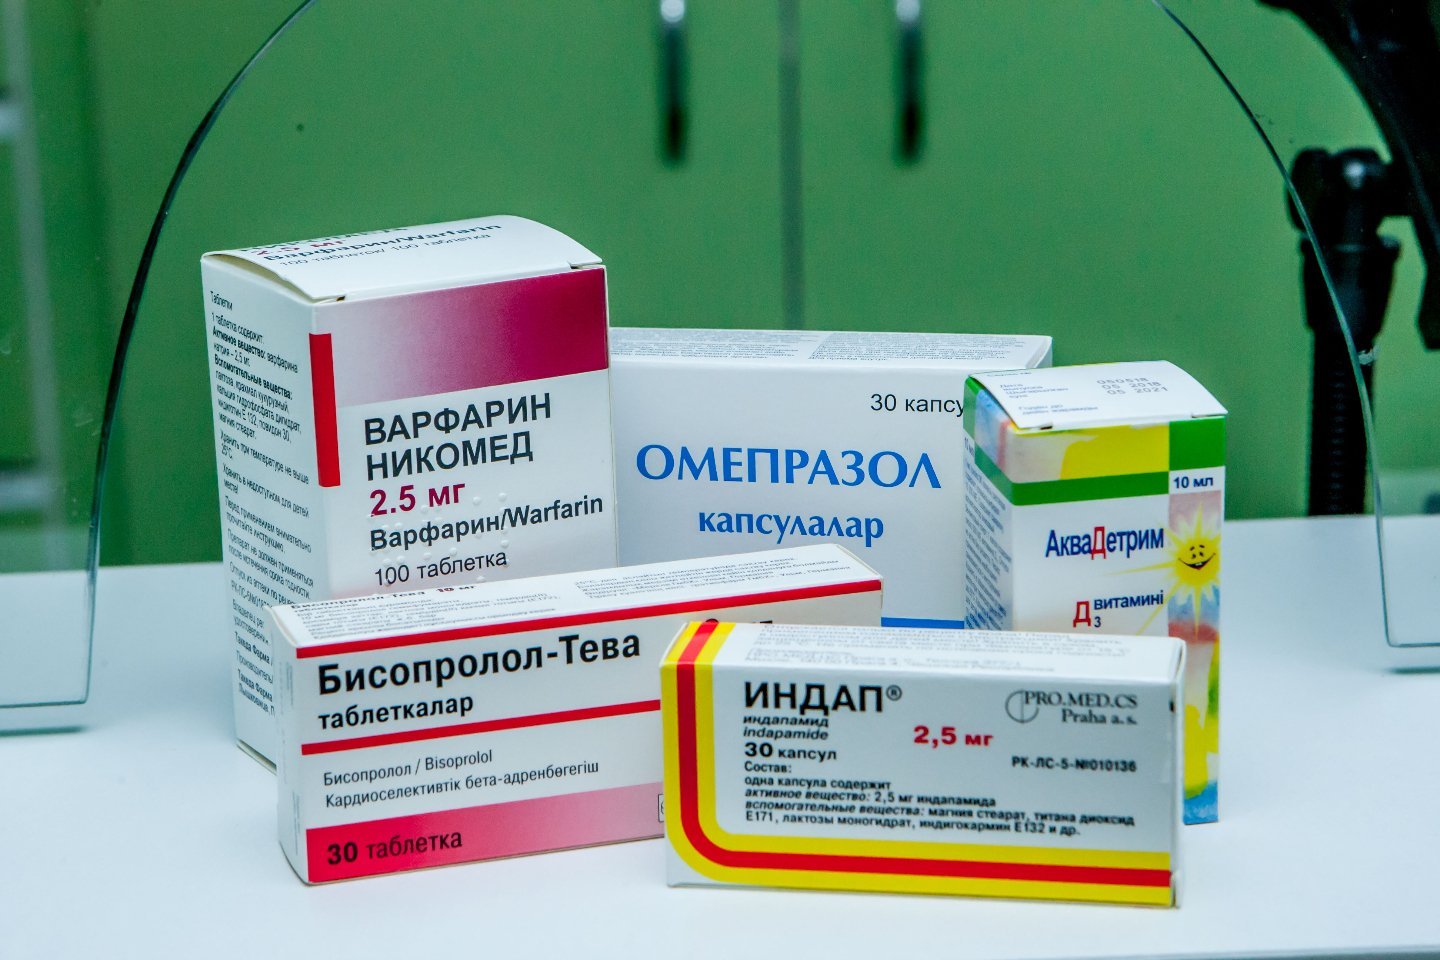 Новости Казахстана / Медицина в Казахстане / 3,8 млн казахстанцев в этом году будут получать бесплатные лекарства